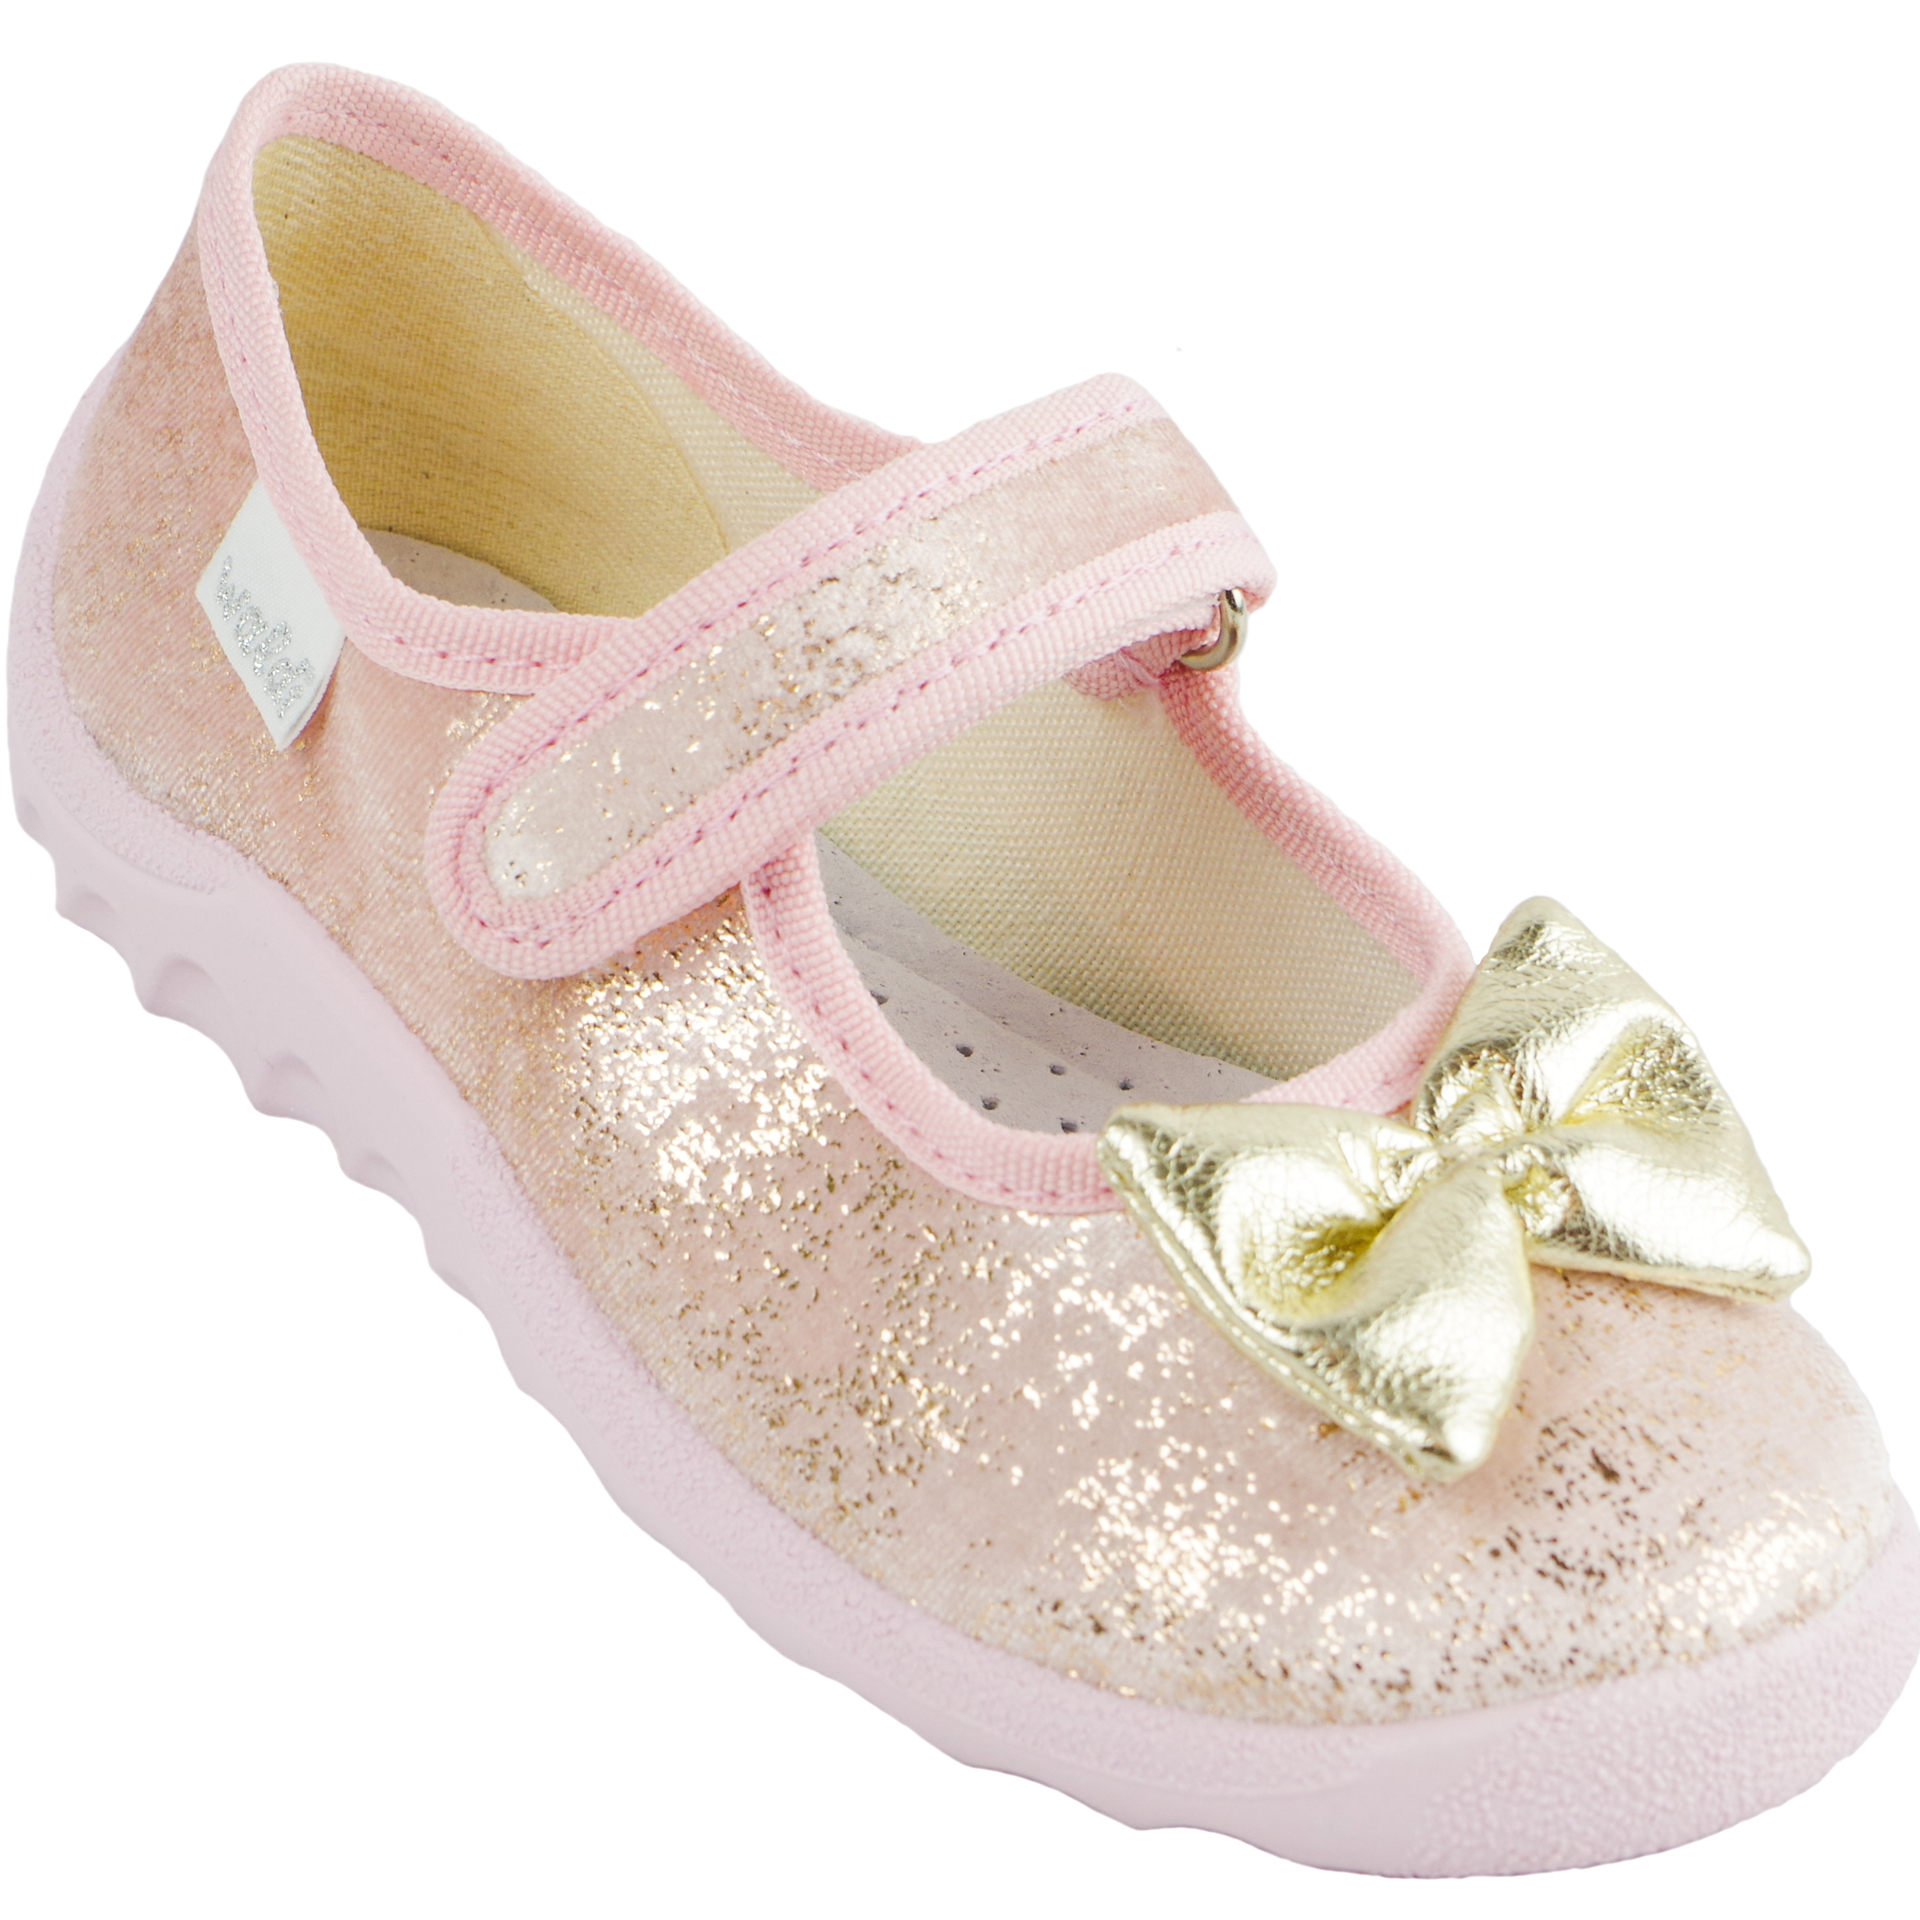 Текстильная обувь для девочек Тапочки Катя (1925) цвет Розовый 21-27 размеры – Sole Kids. Фото 1